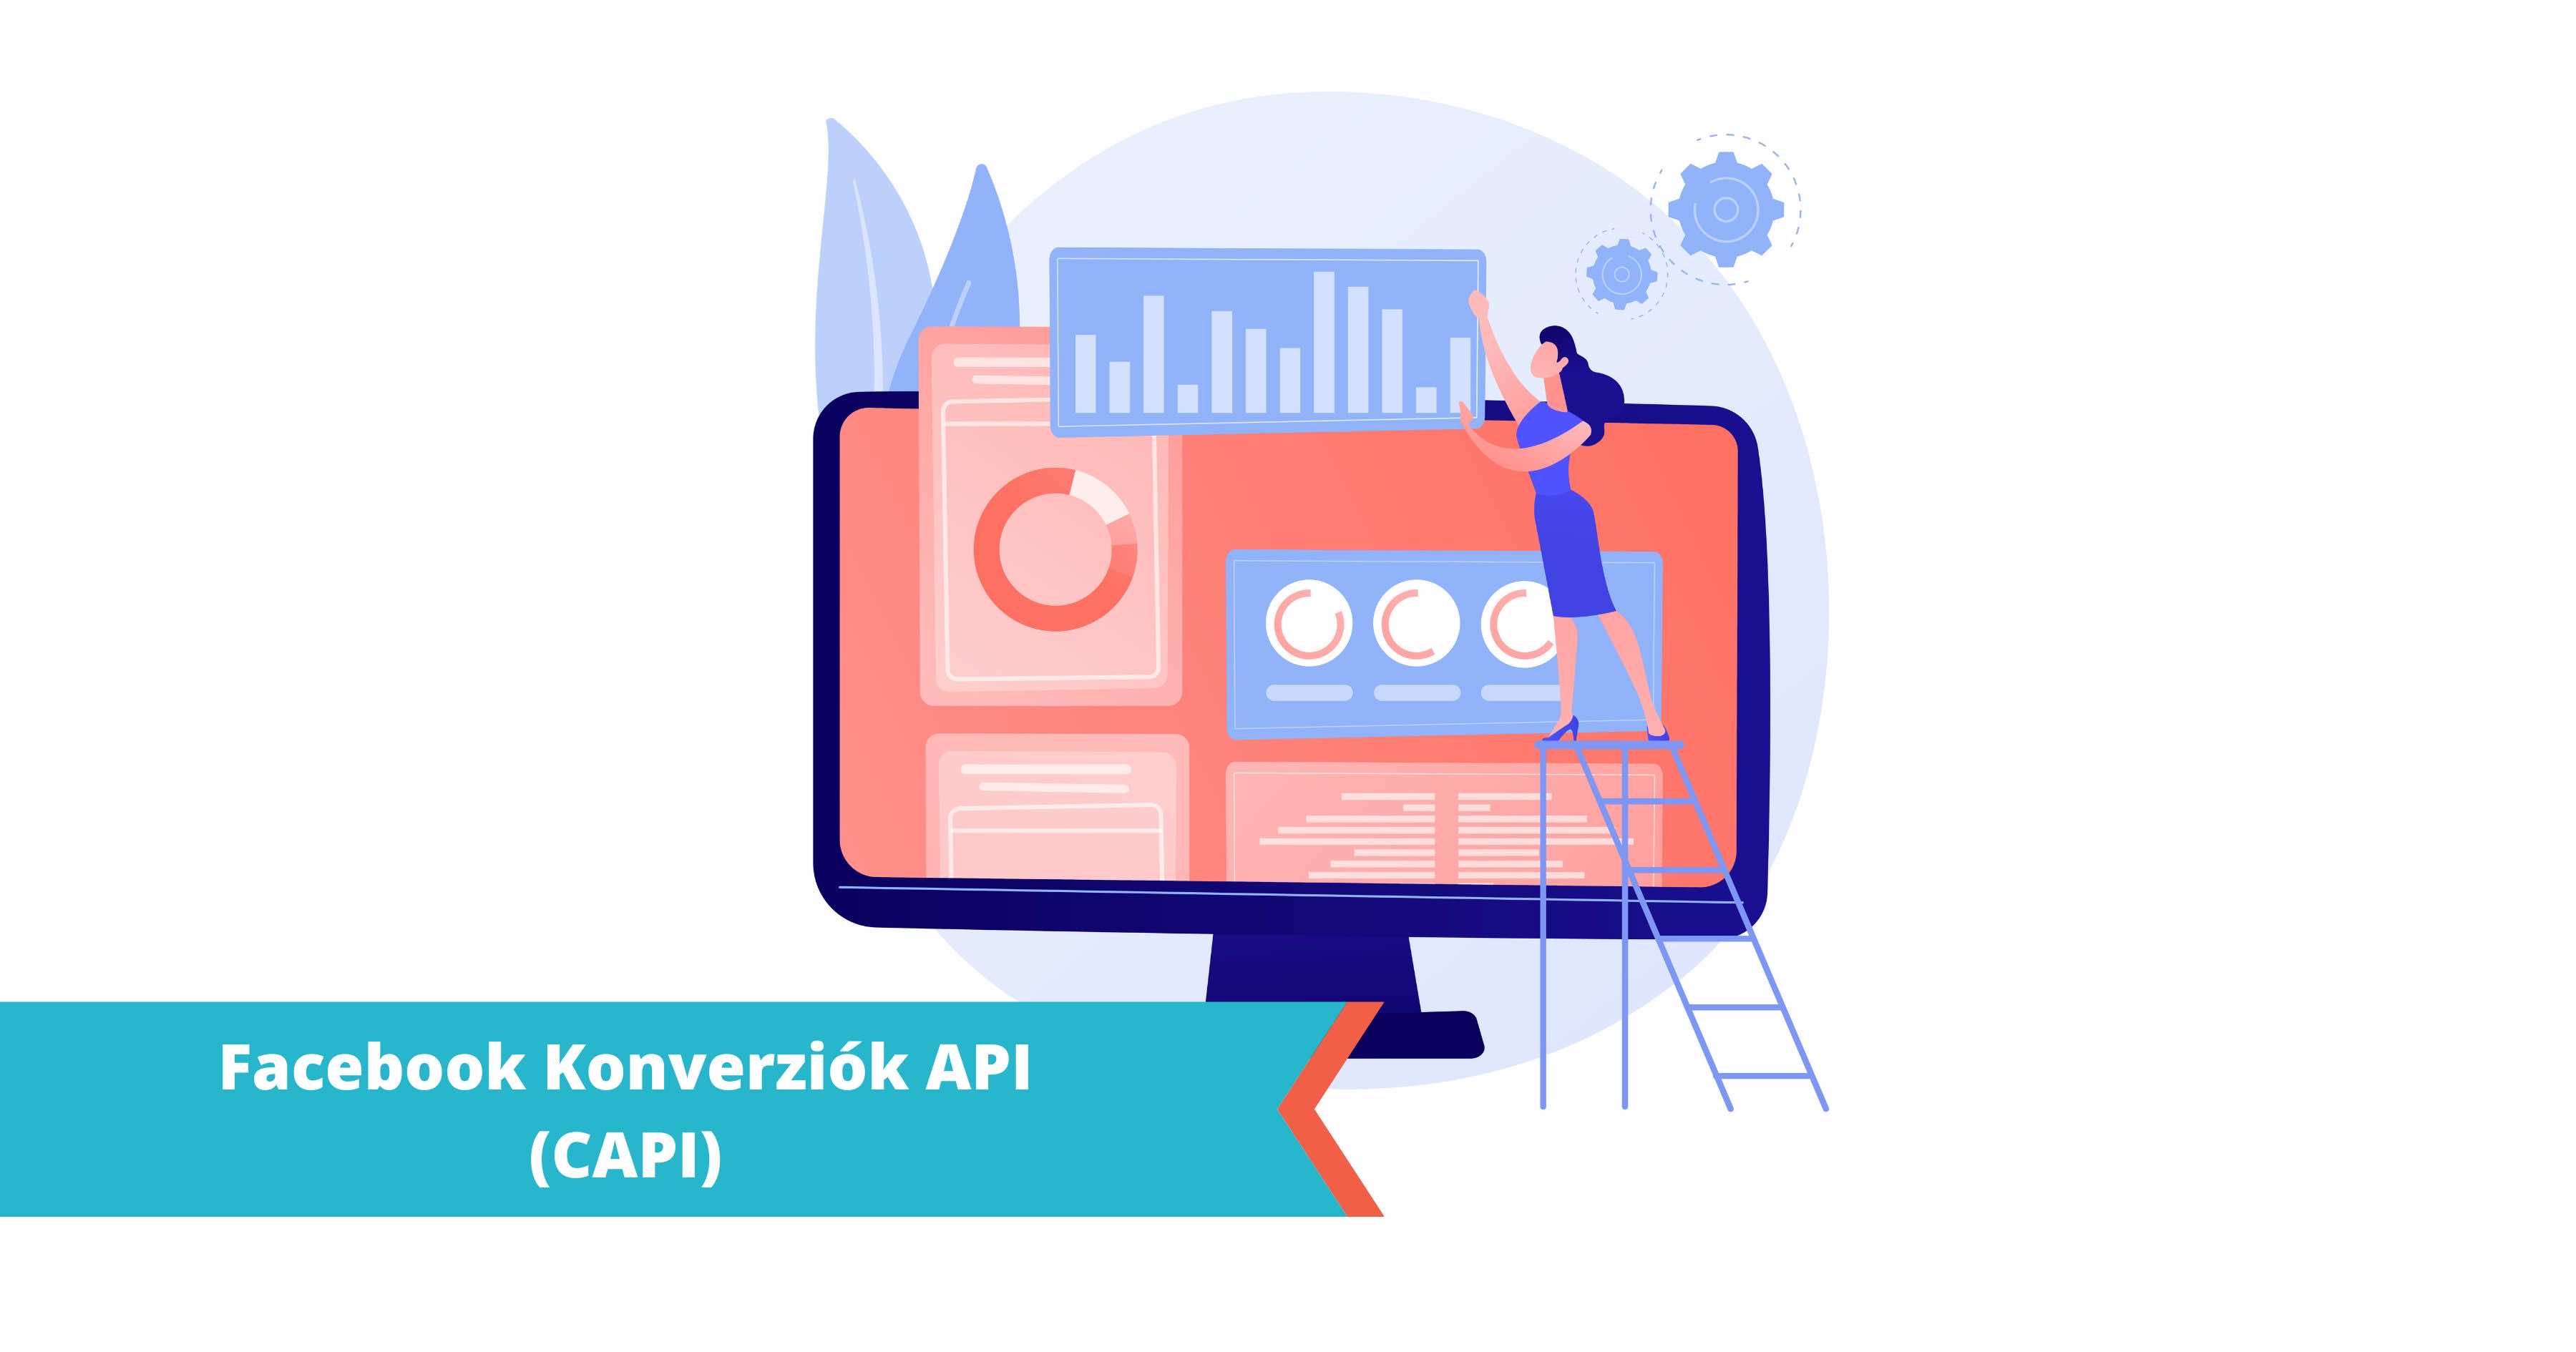 Facebook konverziók API beállítása: Összefoglaló a Facebook Konverziók API-ről (másnéven CAPI) és annak beállítási lehetőségeiről.